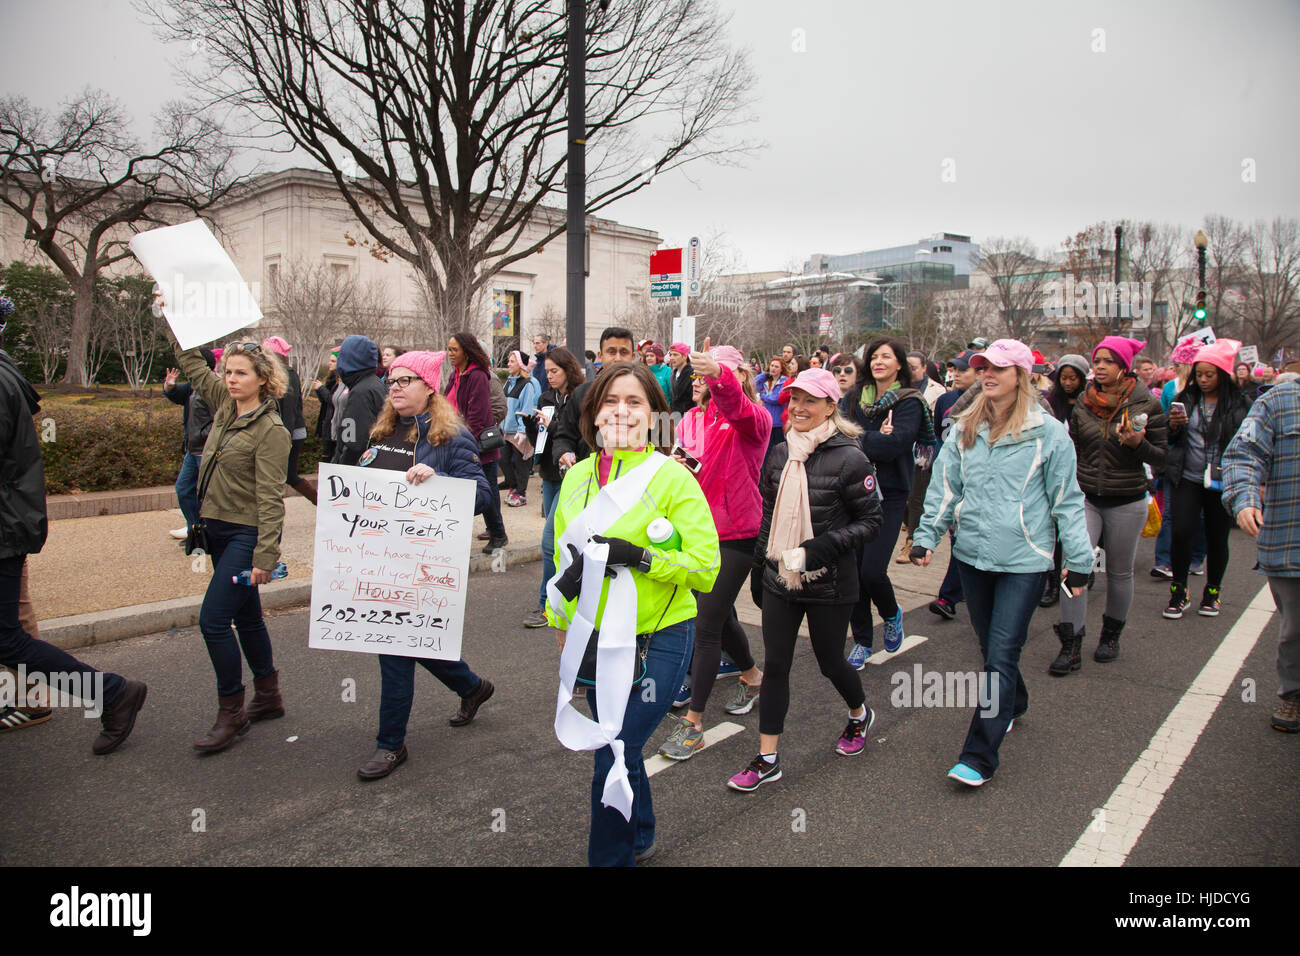 Washington, USA, 21. Januar 2017. Der Frauen Marsch auf Washington, DC: Frauen März Positionen des Präsidenten Trumpf auf Frauen und andere Menschenrechte zu protestieren. Credit: dasha Rosato/alamy leben Nachrichten Stockfoto